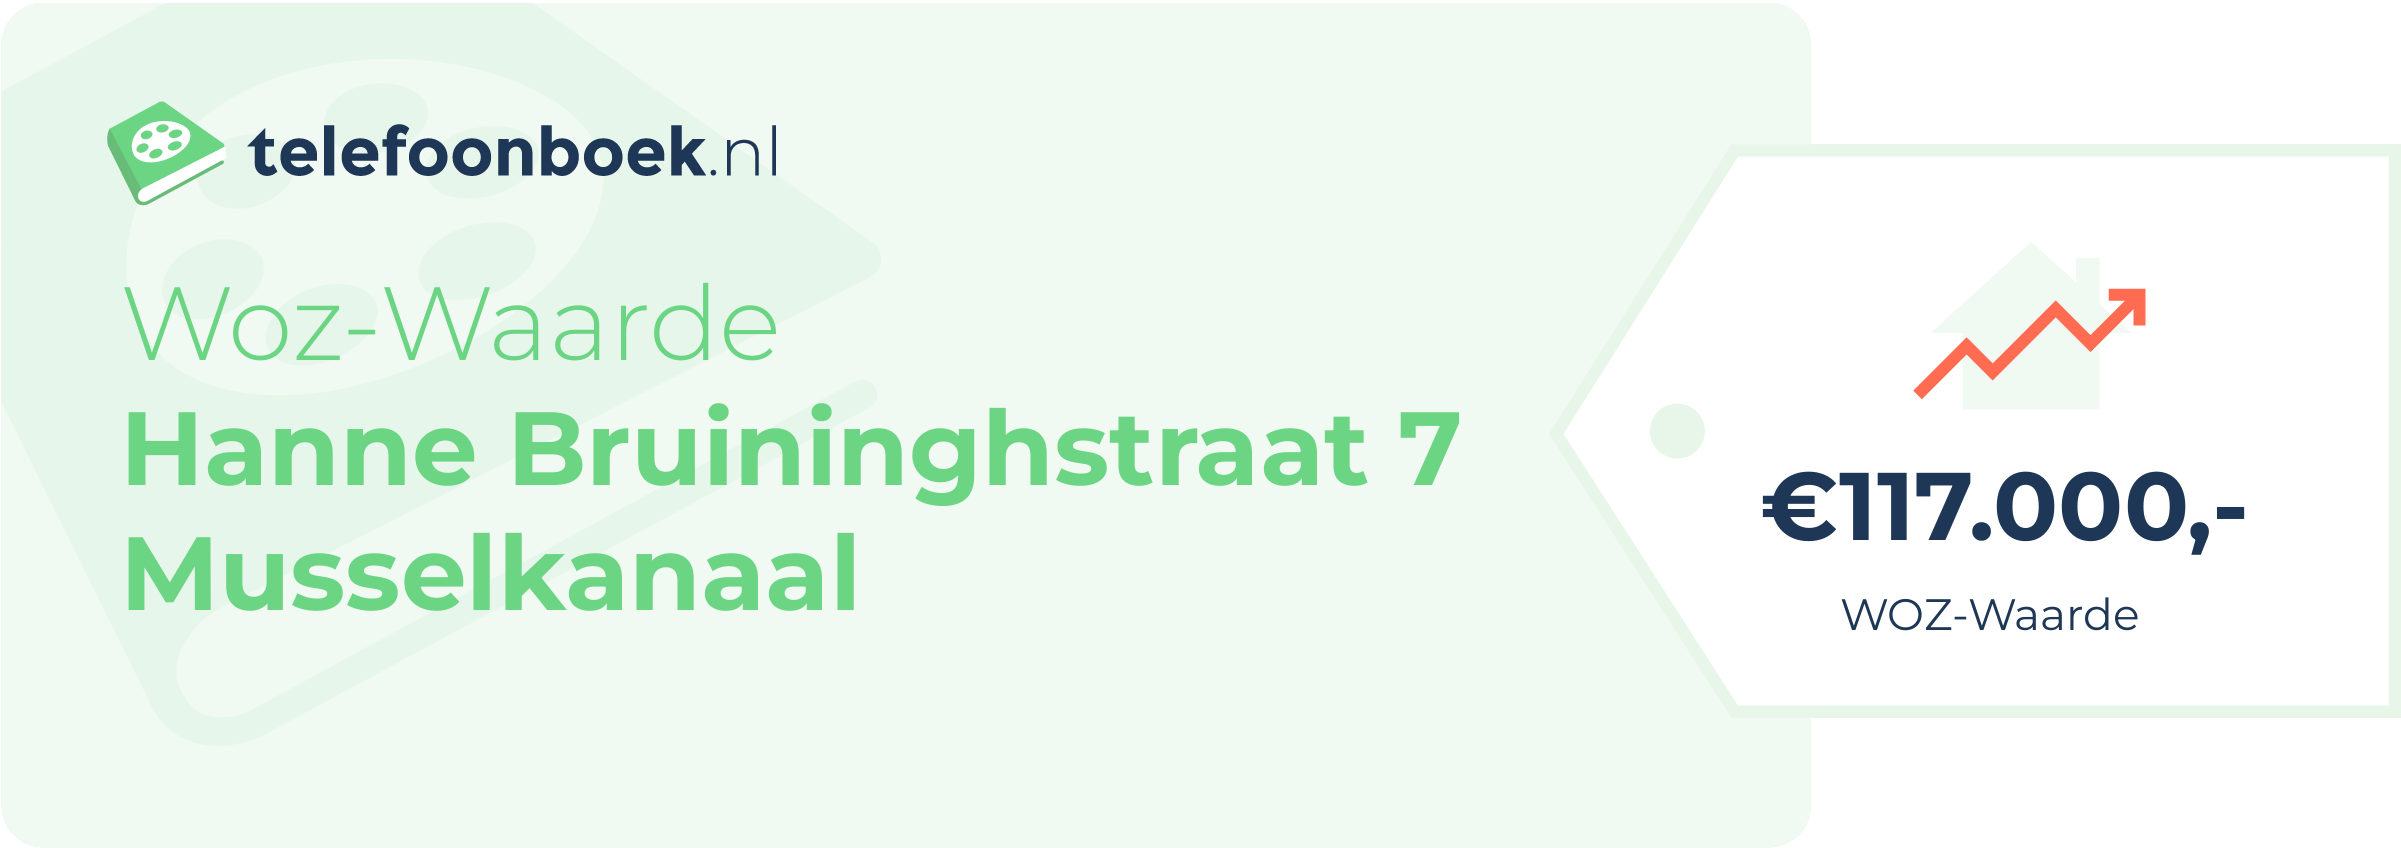 WOZ-waarde Hanne Bruininghstraat 7 Musselkanaal